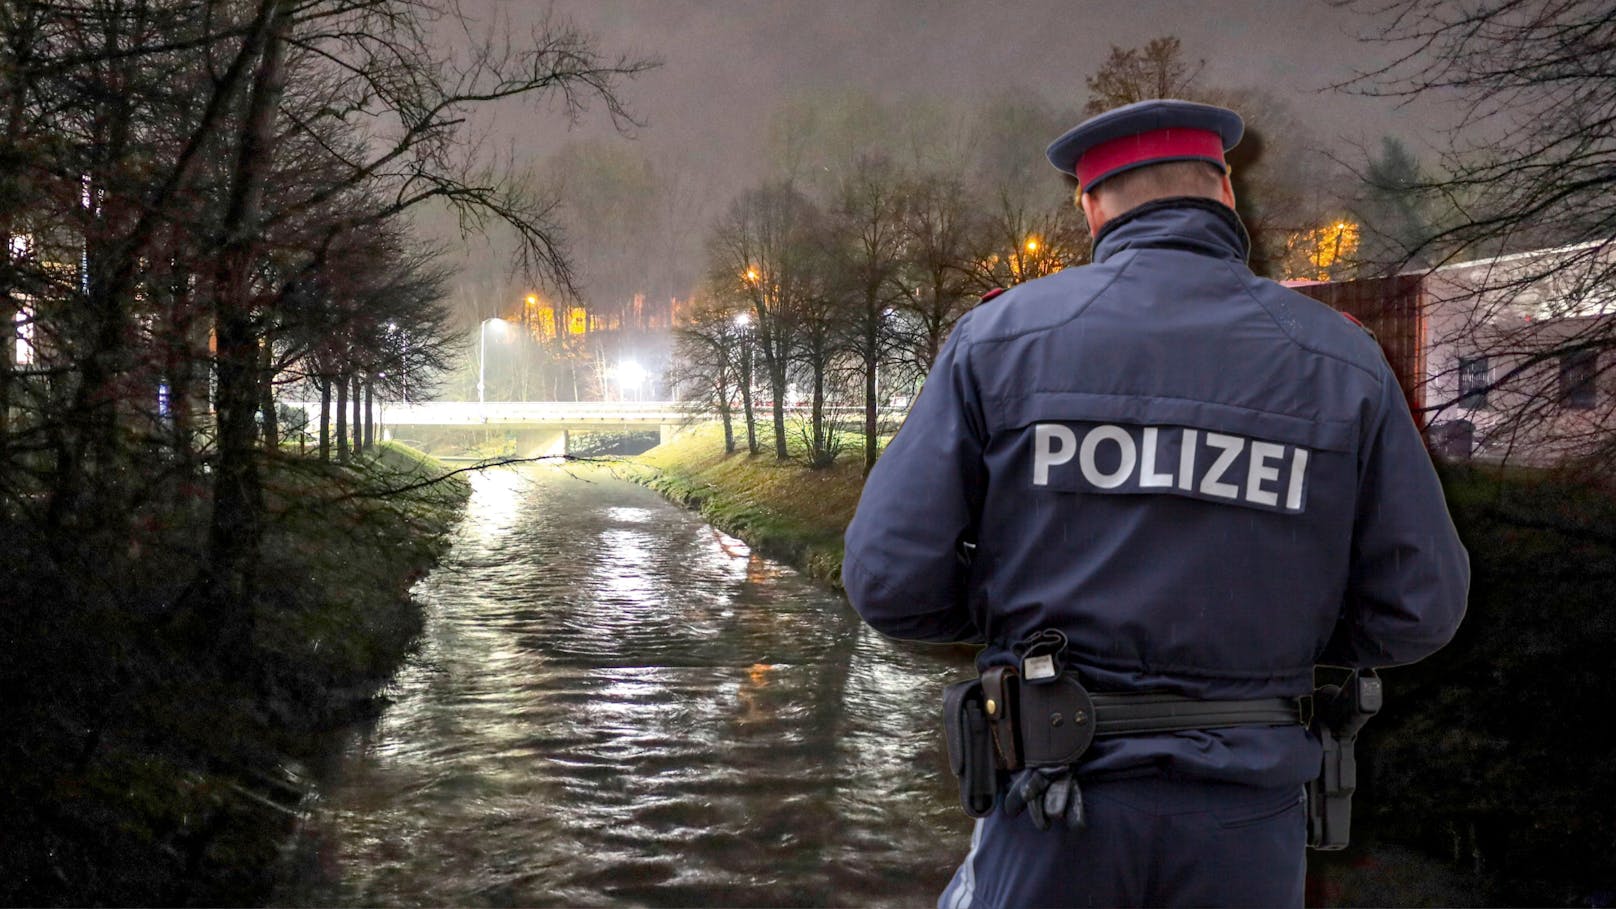 Polizisten machten in Fluss zufällig grausigen Fund